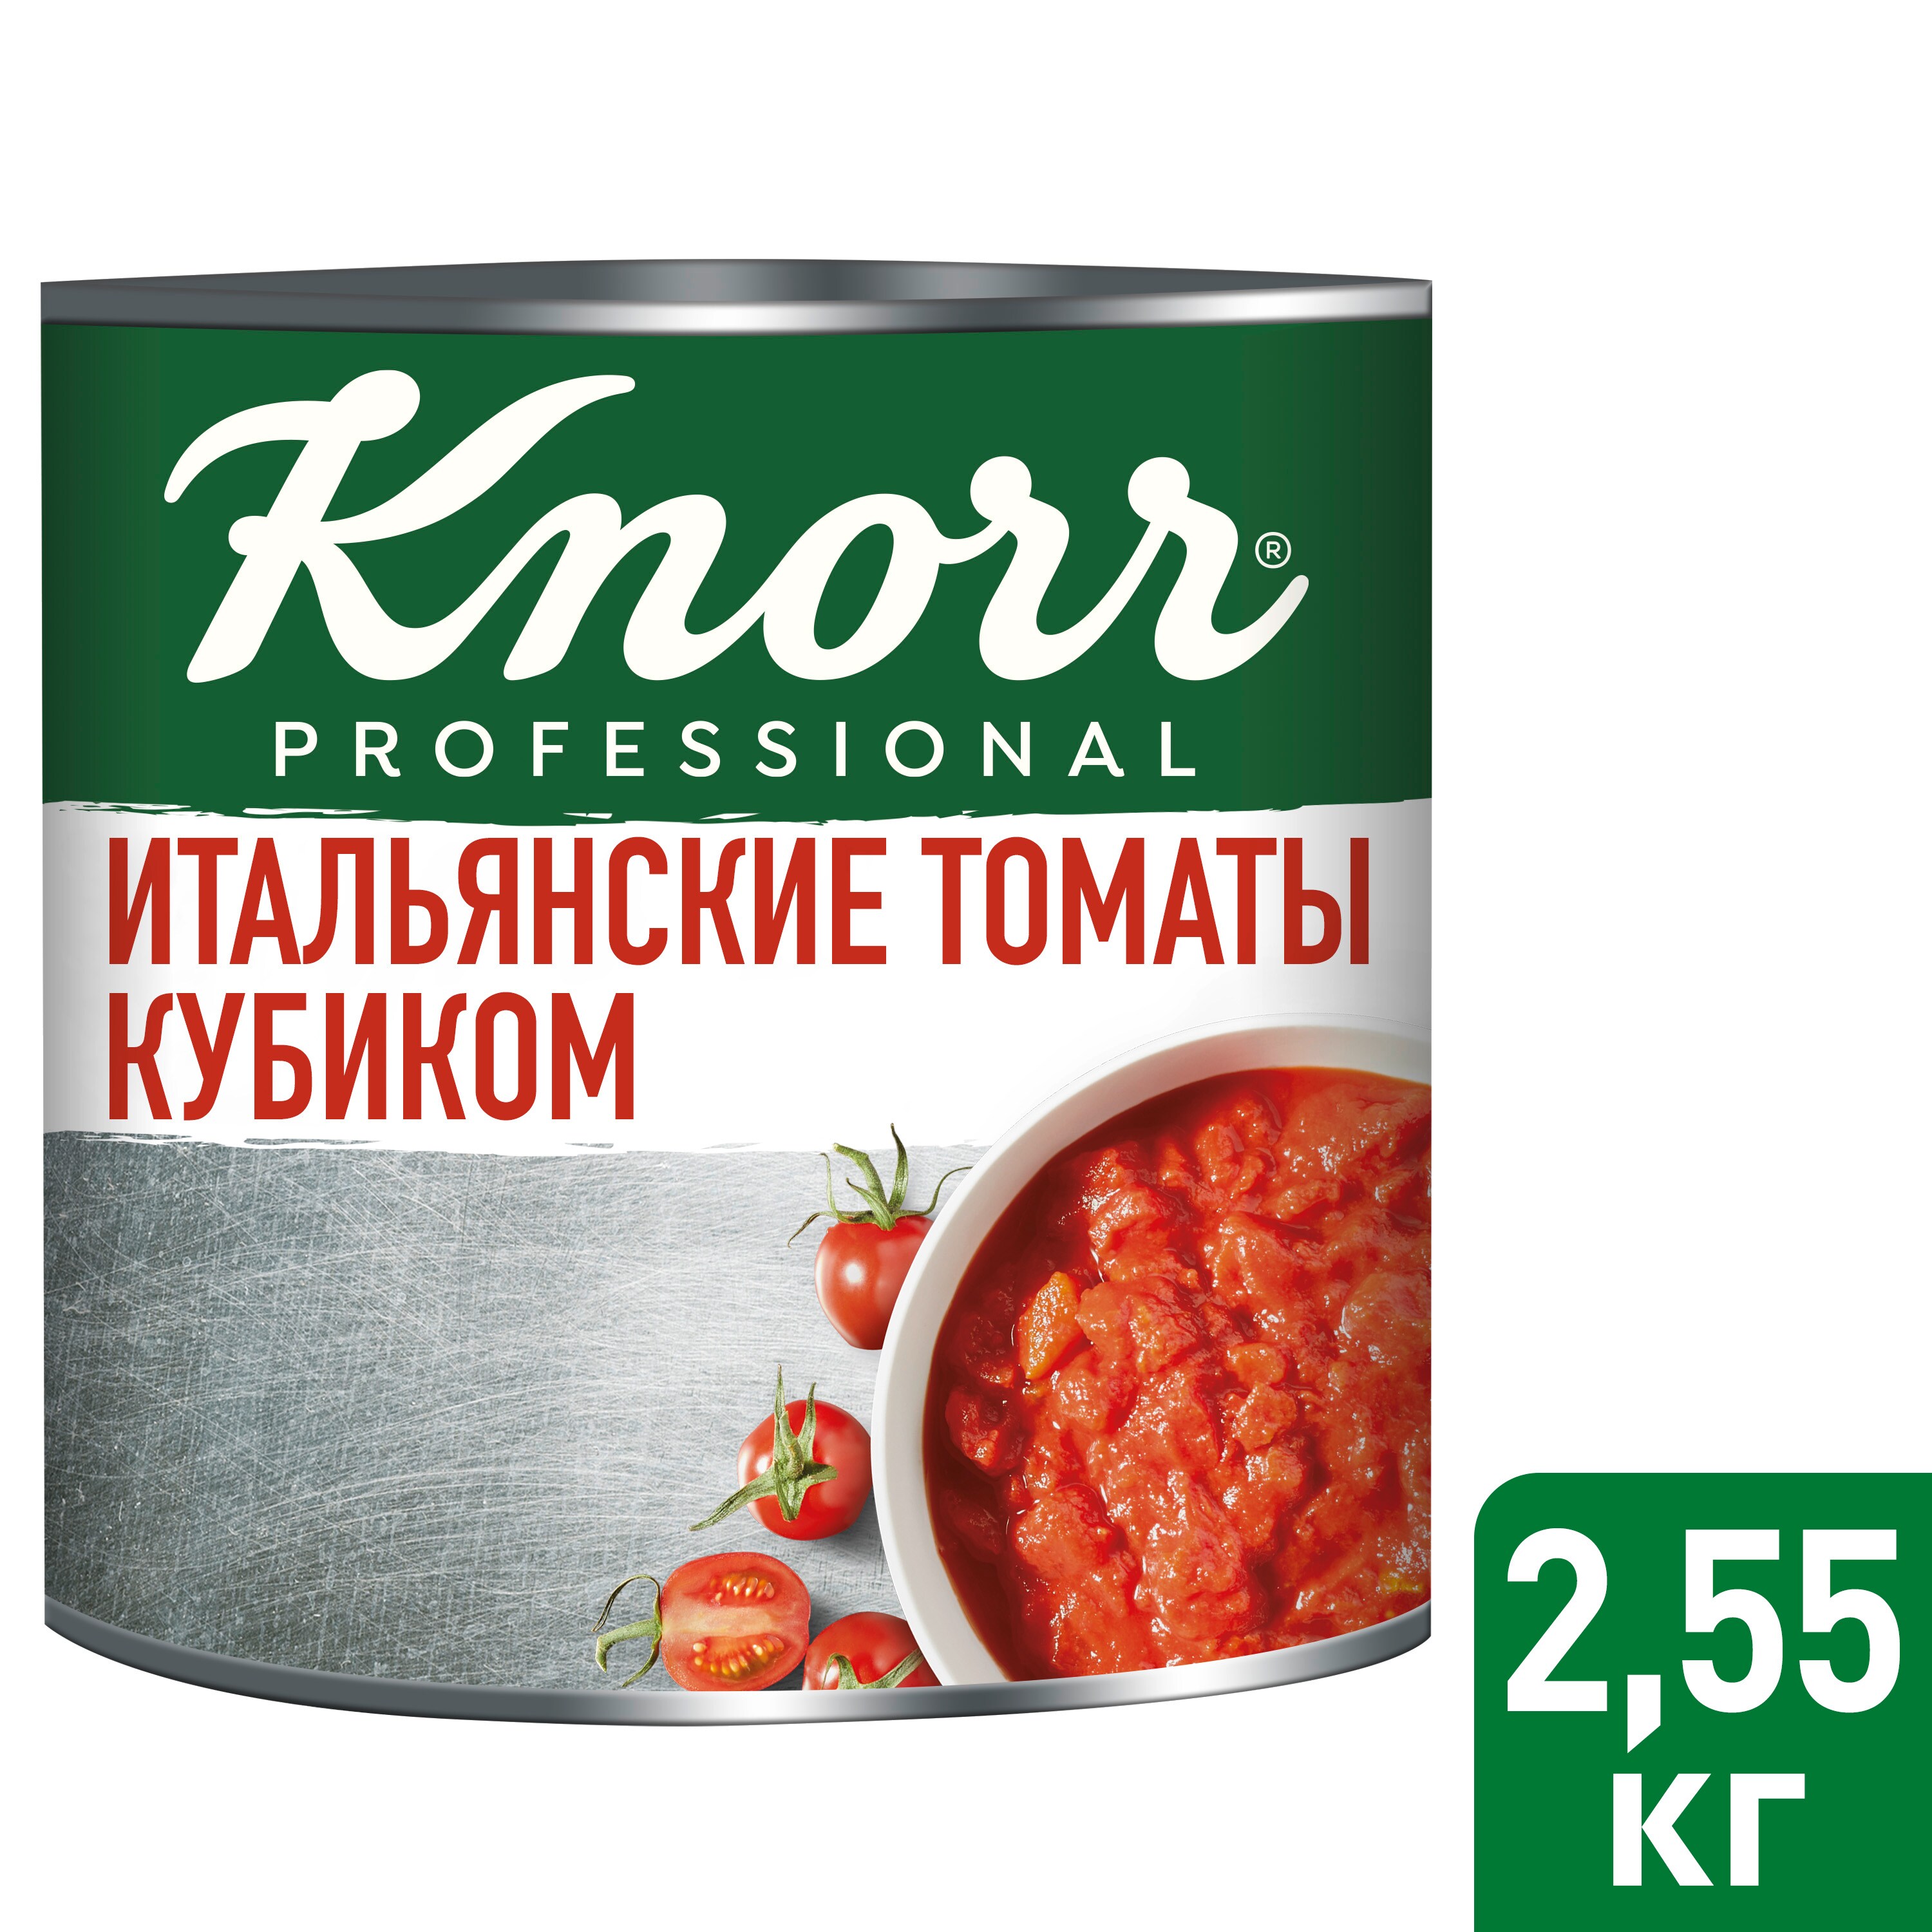 KNORR PROFESSIONAL Консервированные овощи Итальянские томаты кубиком (2,55 кг) - Итальянские томаты кубиком KNORR PROFESSIONAL– больше томатов, меньше сока.